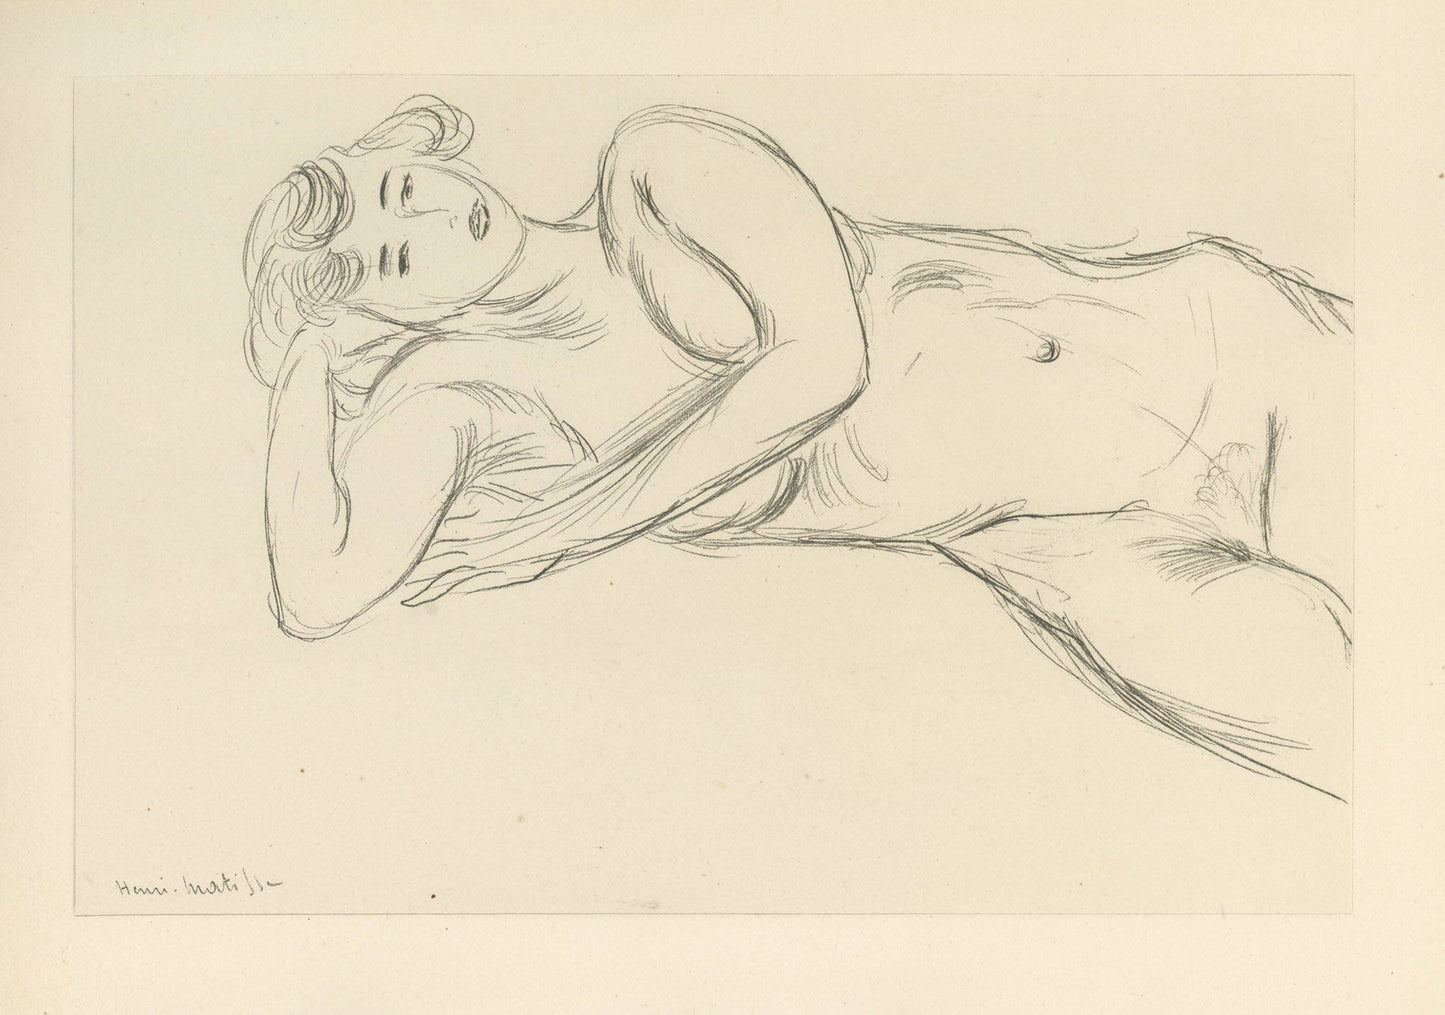 Henri Matisse - Planche XXXV From "Cinquante Dessins"